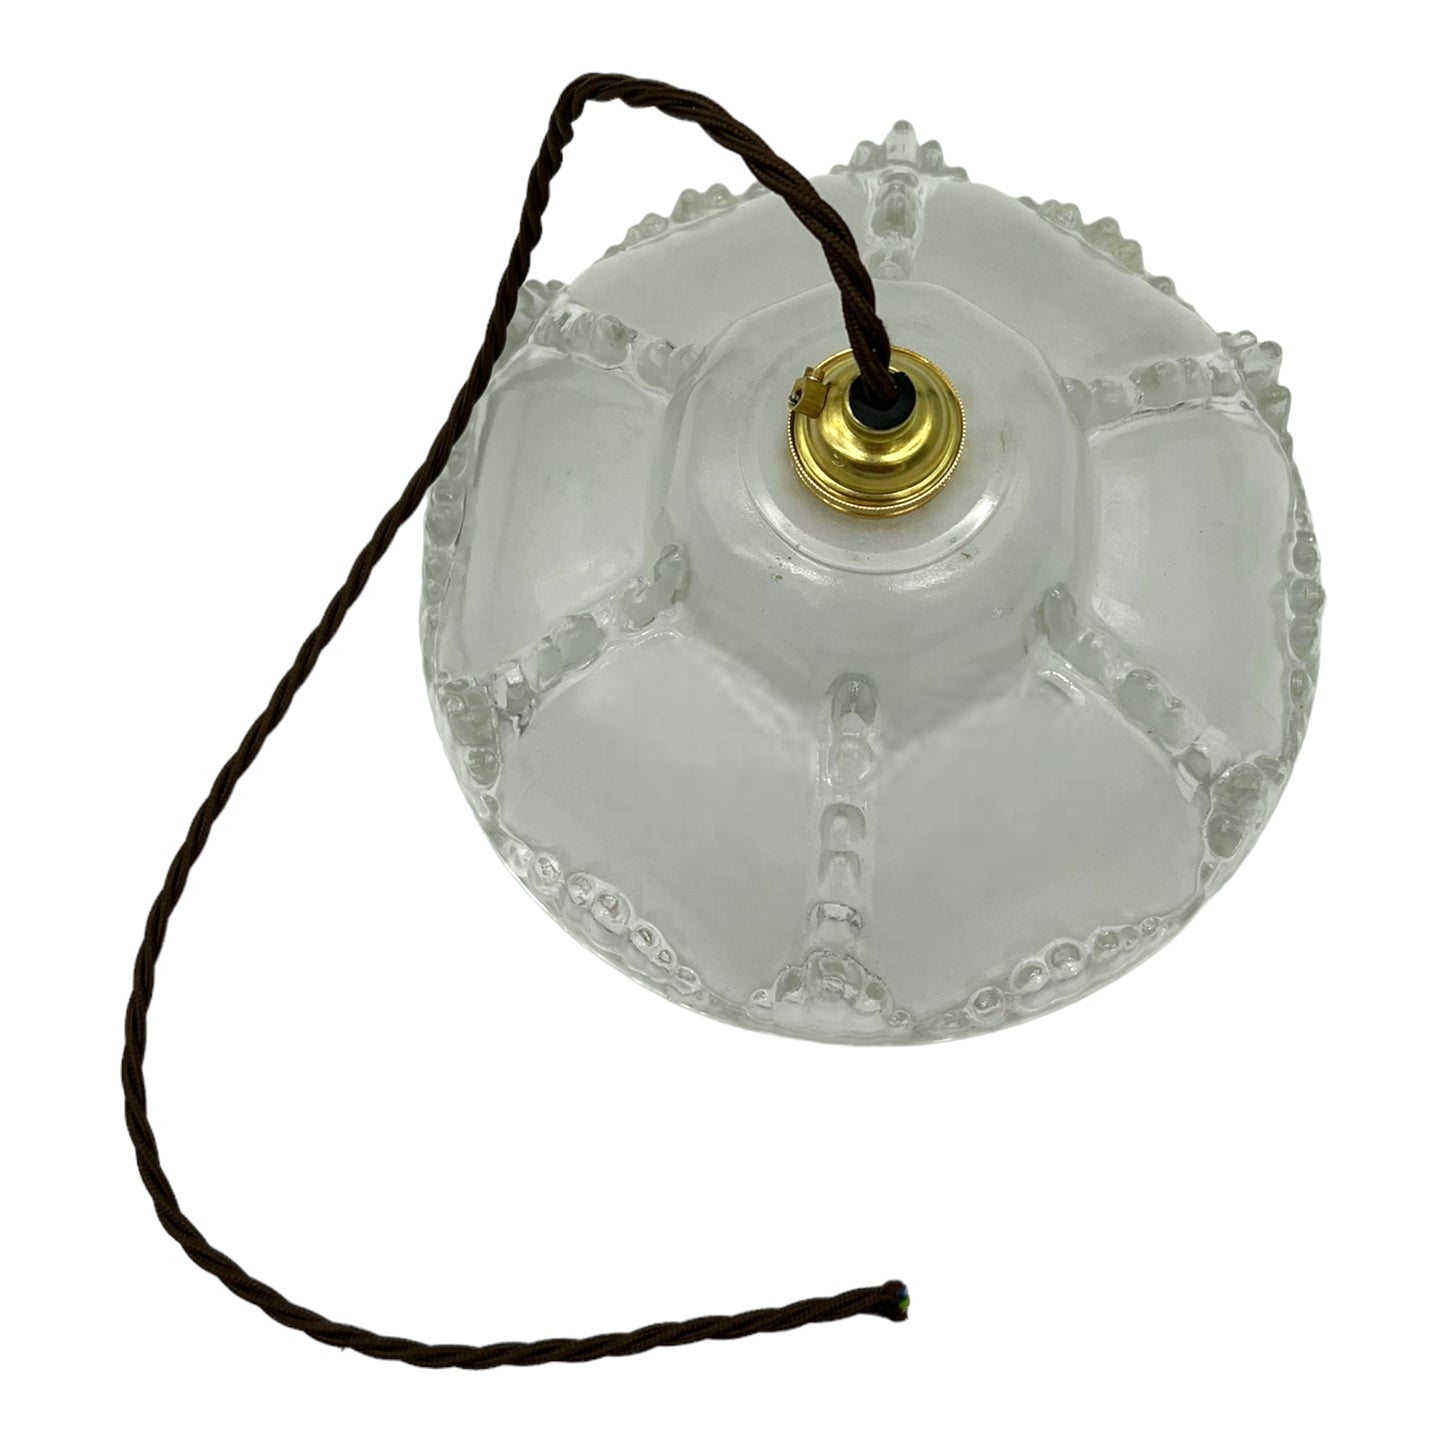 Vintage Ceiling Pendant Light, French Vintage Deco Glass Pendant Light (A134)